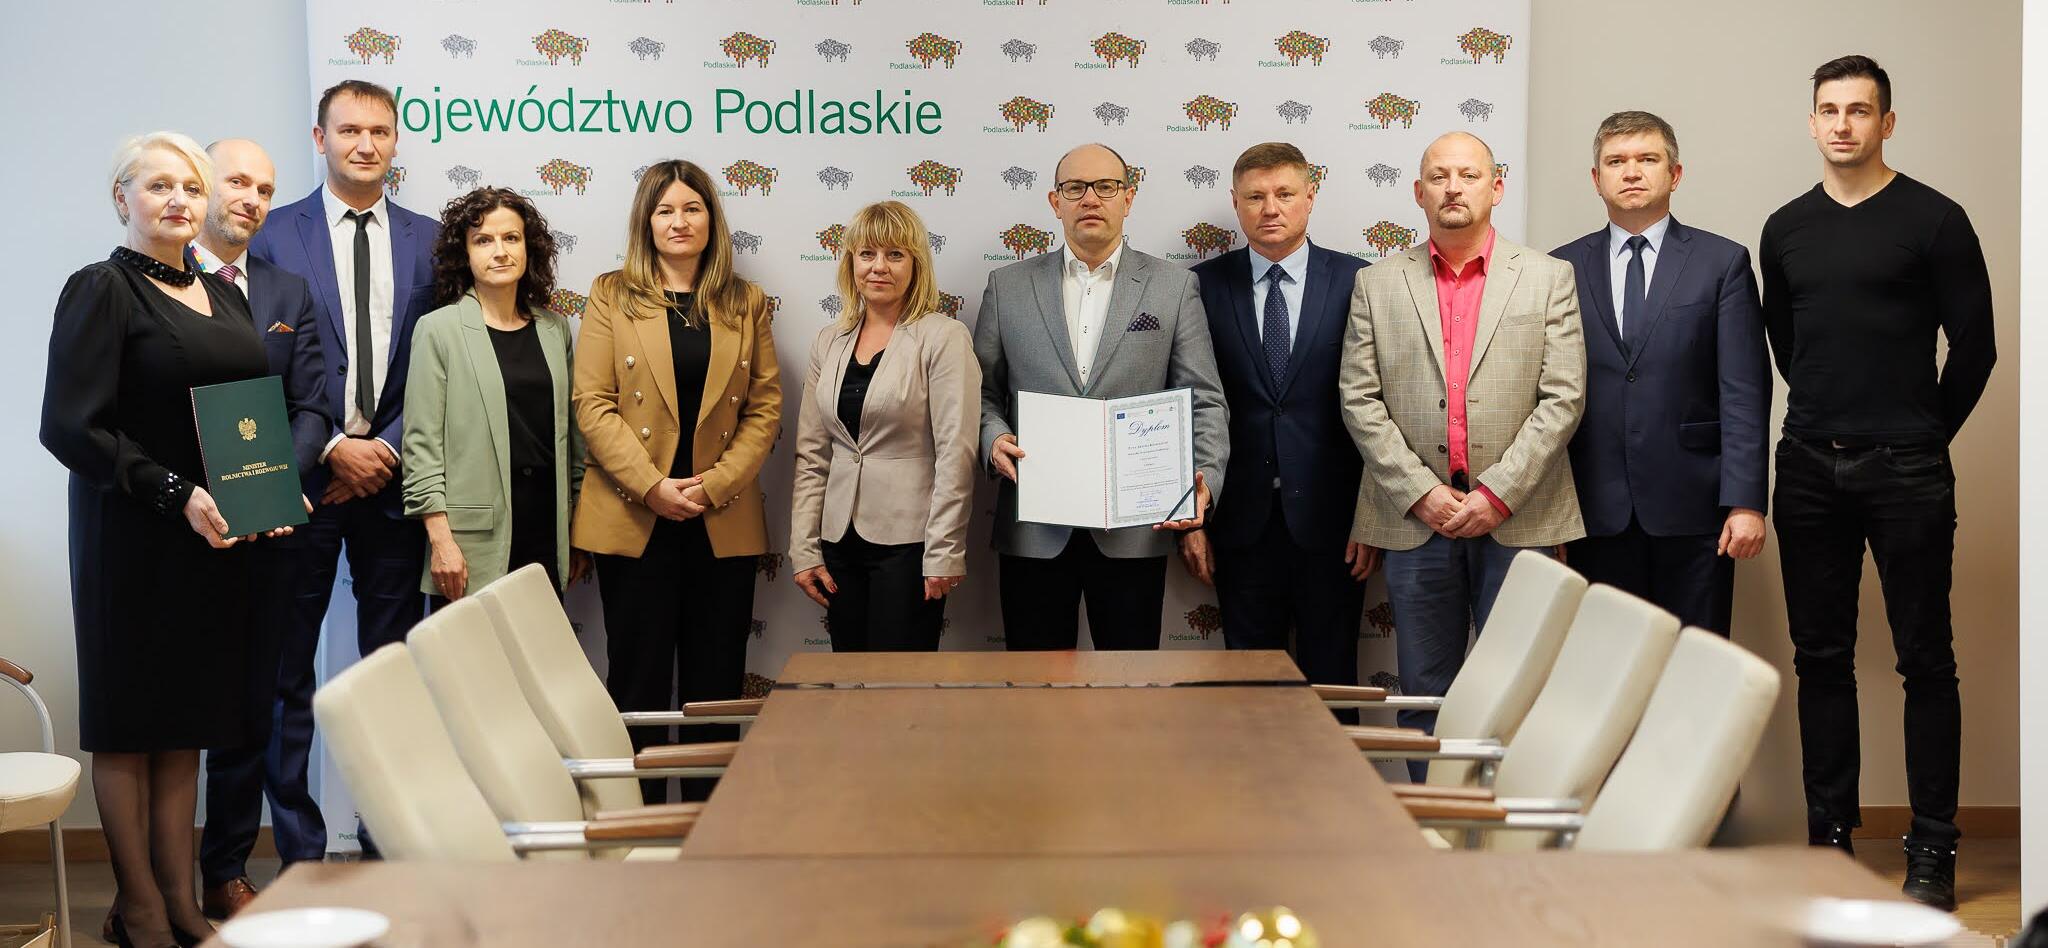 Sukces Wojewódzkiego Biura Geodezji w Białymstoku